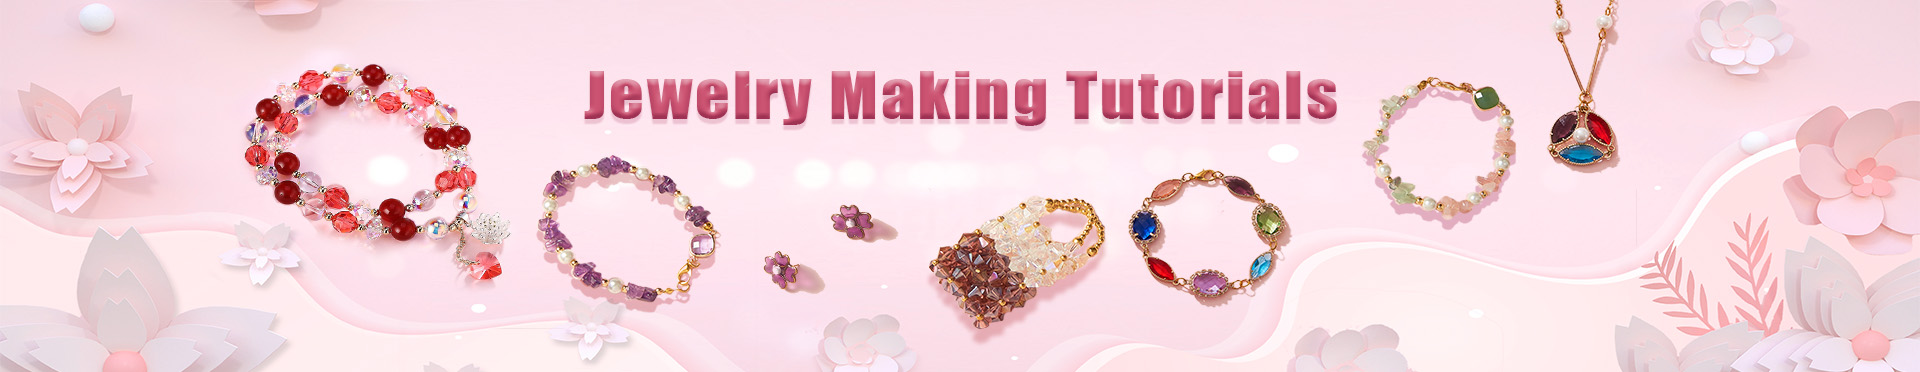 Jewelry Making Tutorials